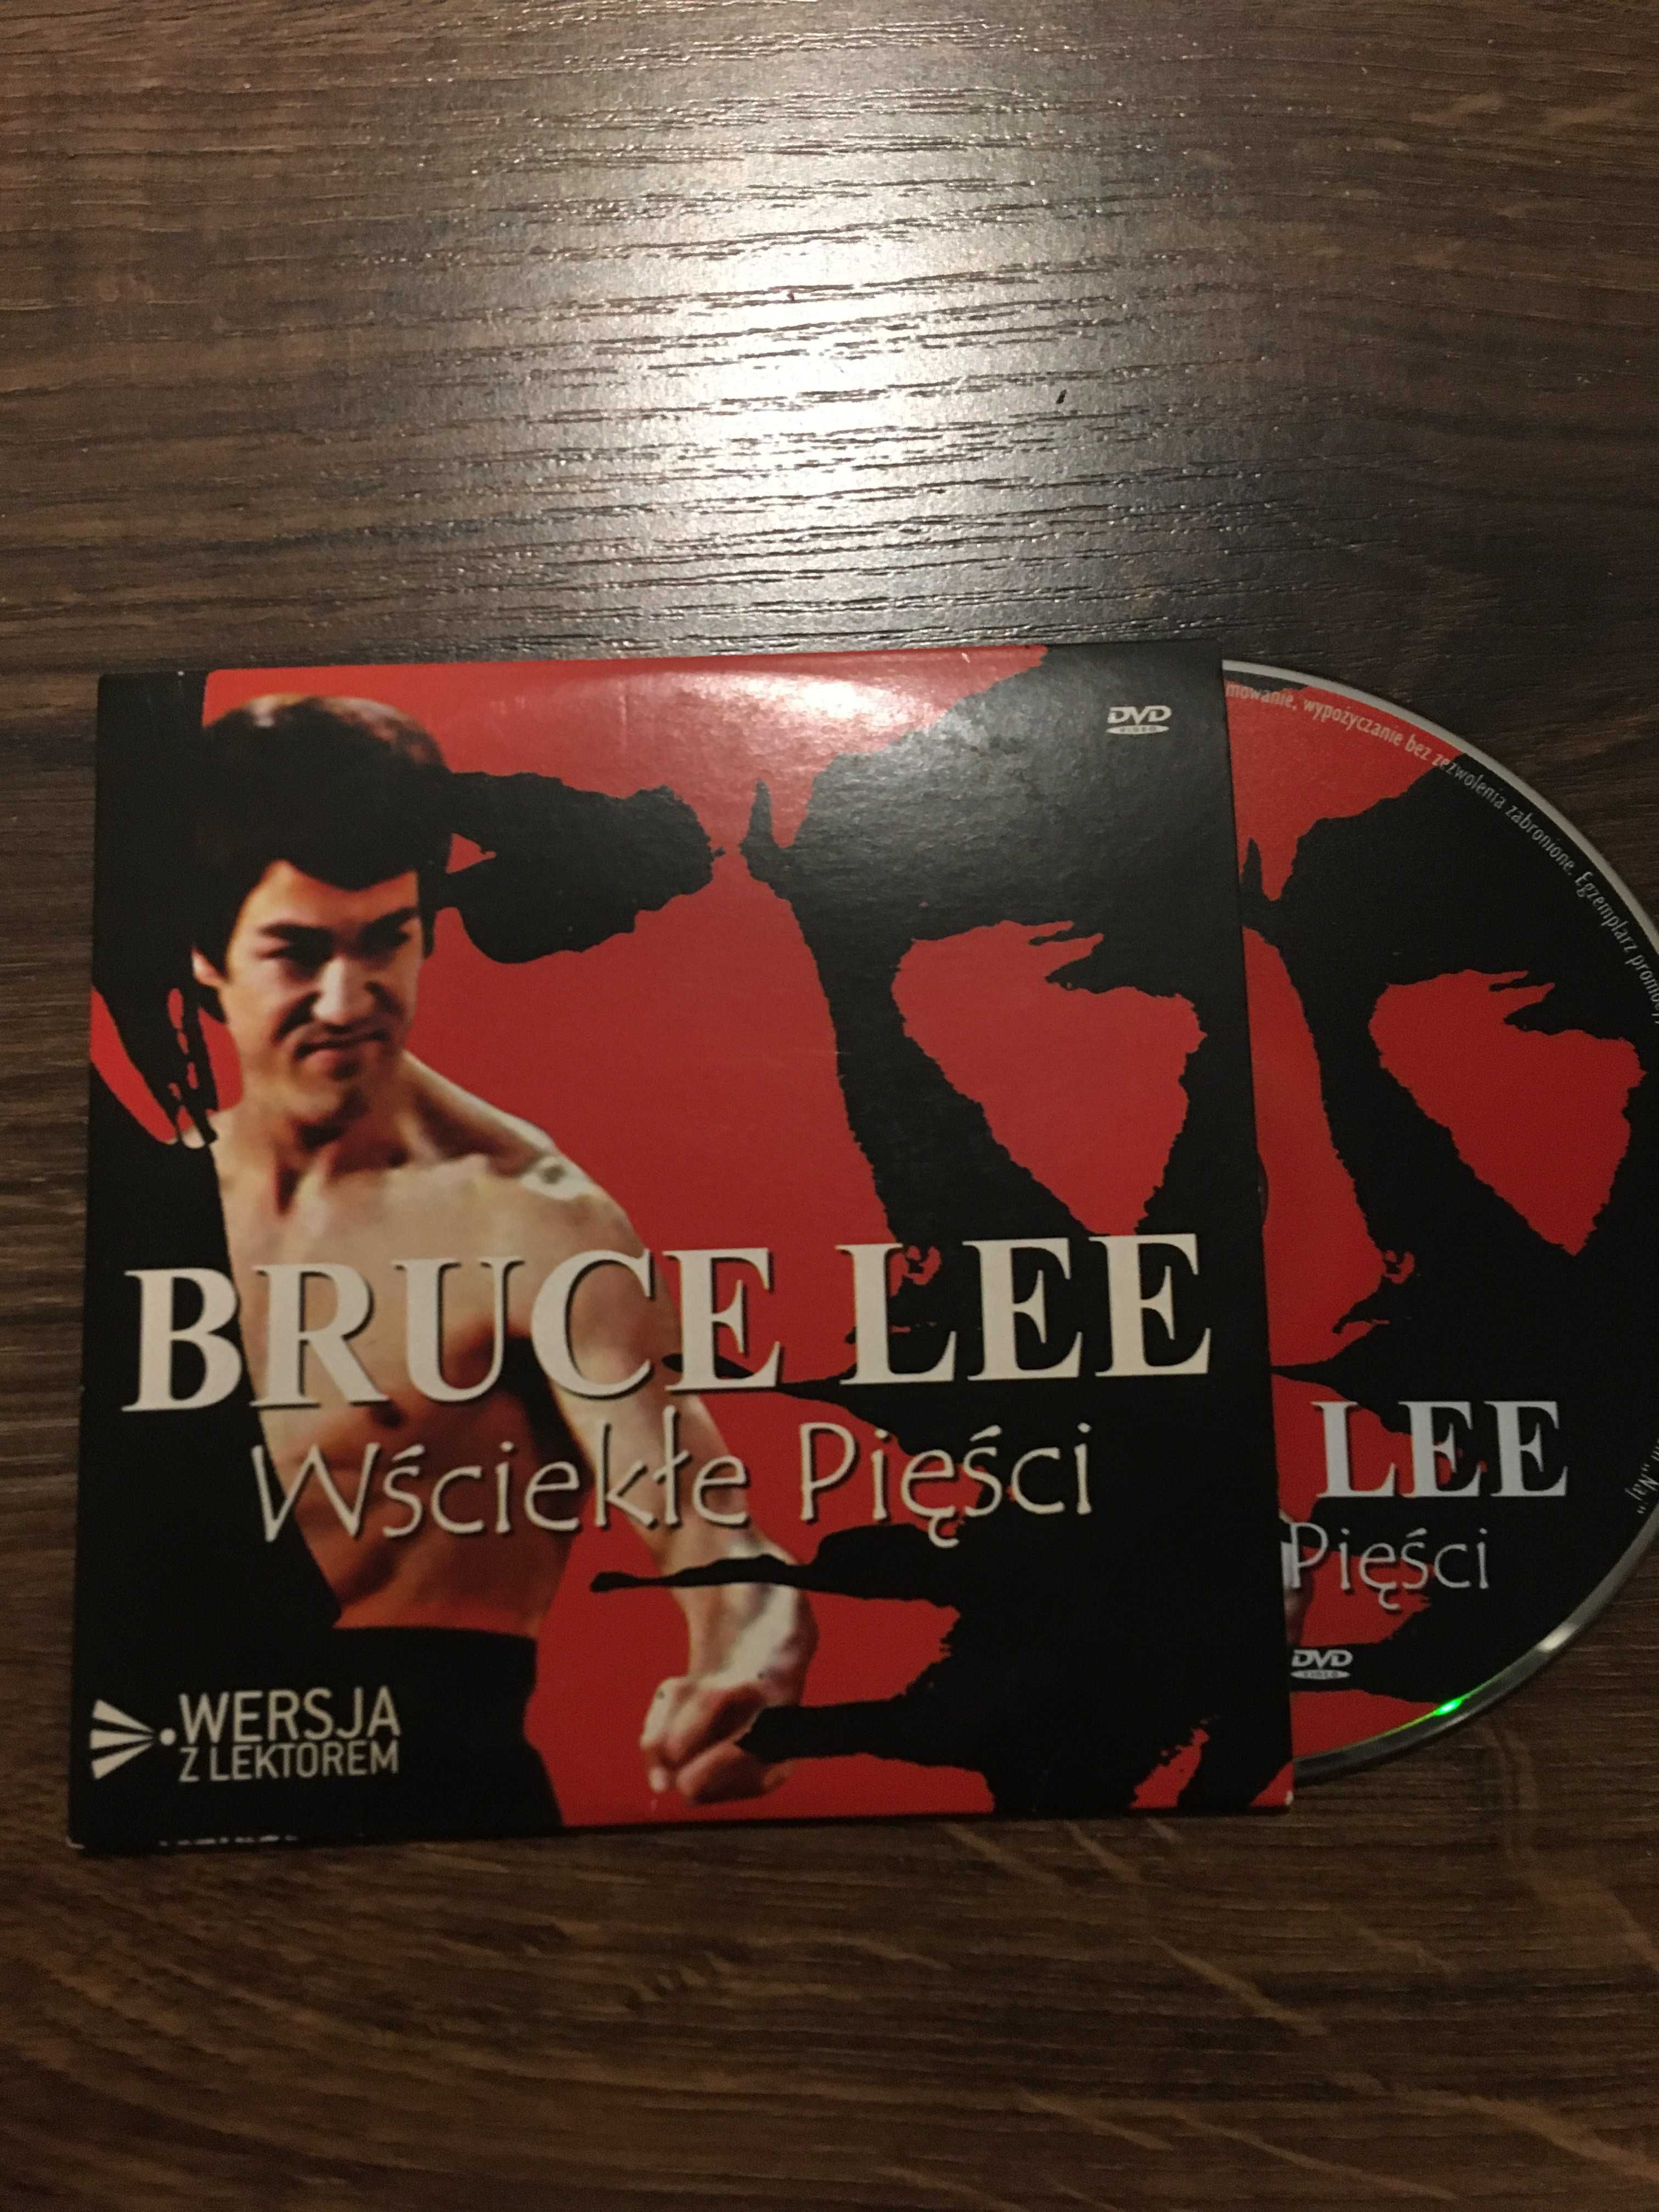 Film DVD "Wściekłe pięści" Bruce Lee  nowy